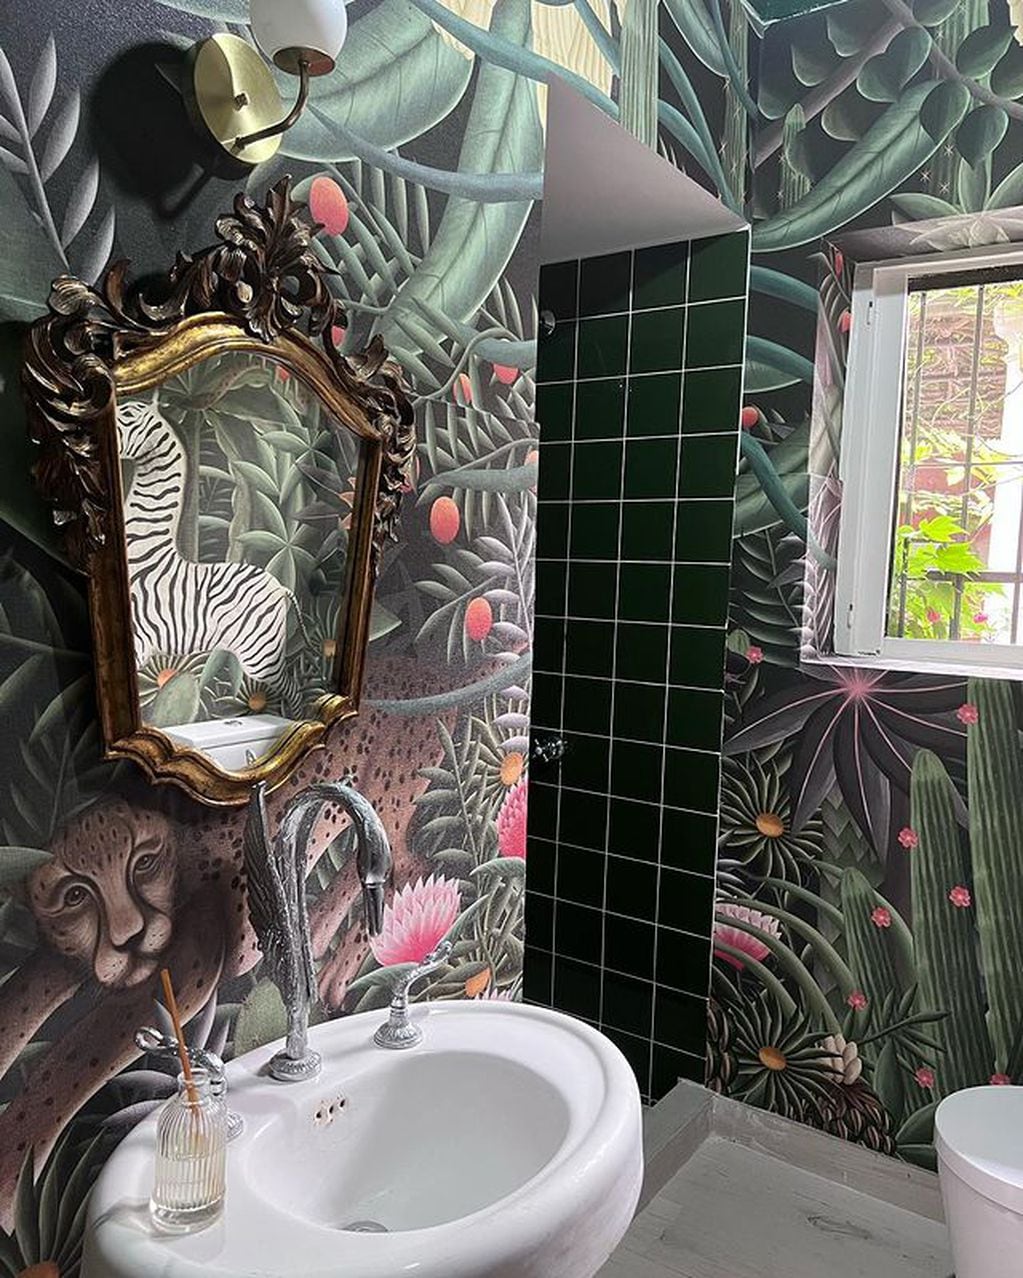 Otro sector muy especial es el baño de invitado de La China Suárez completamente remodelado. (Instagram)